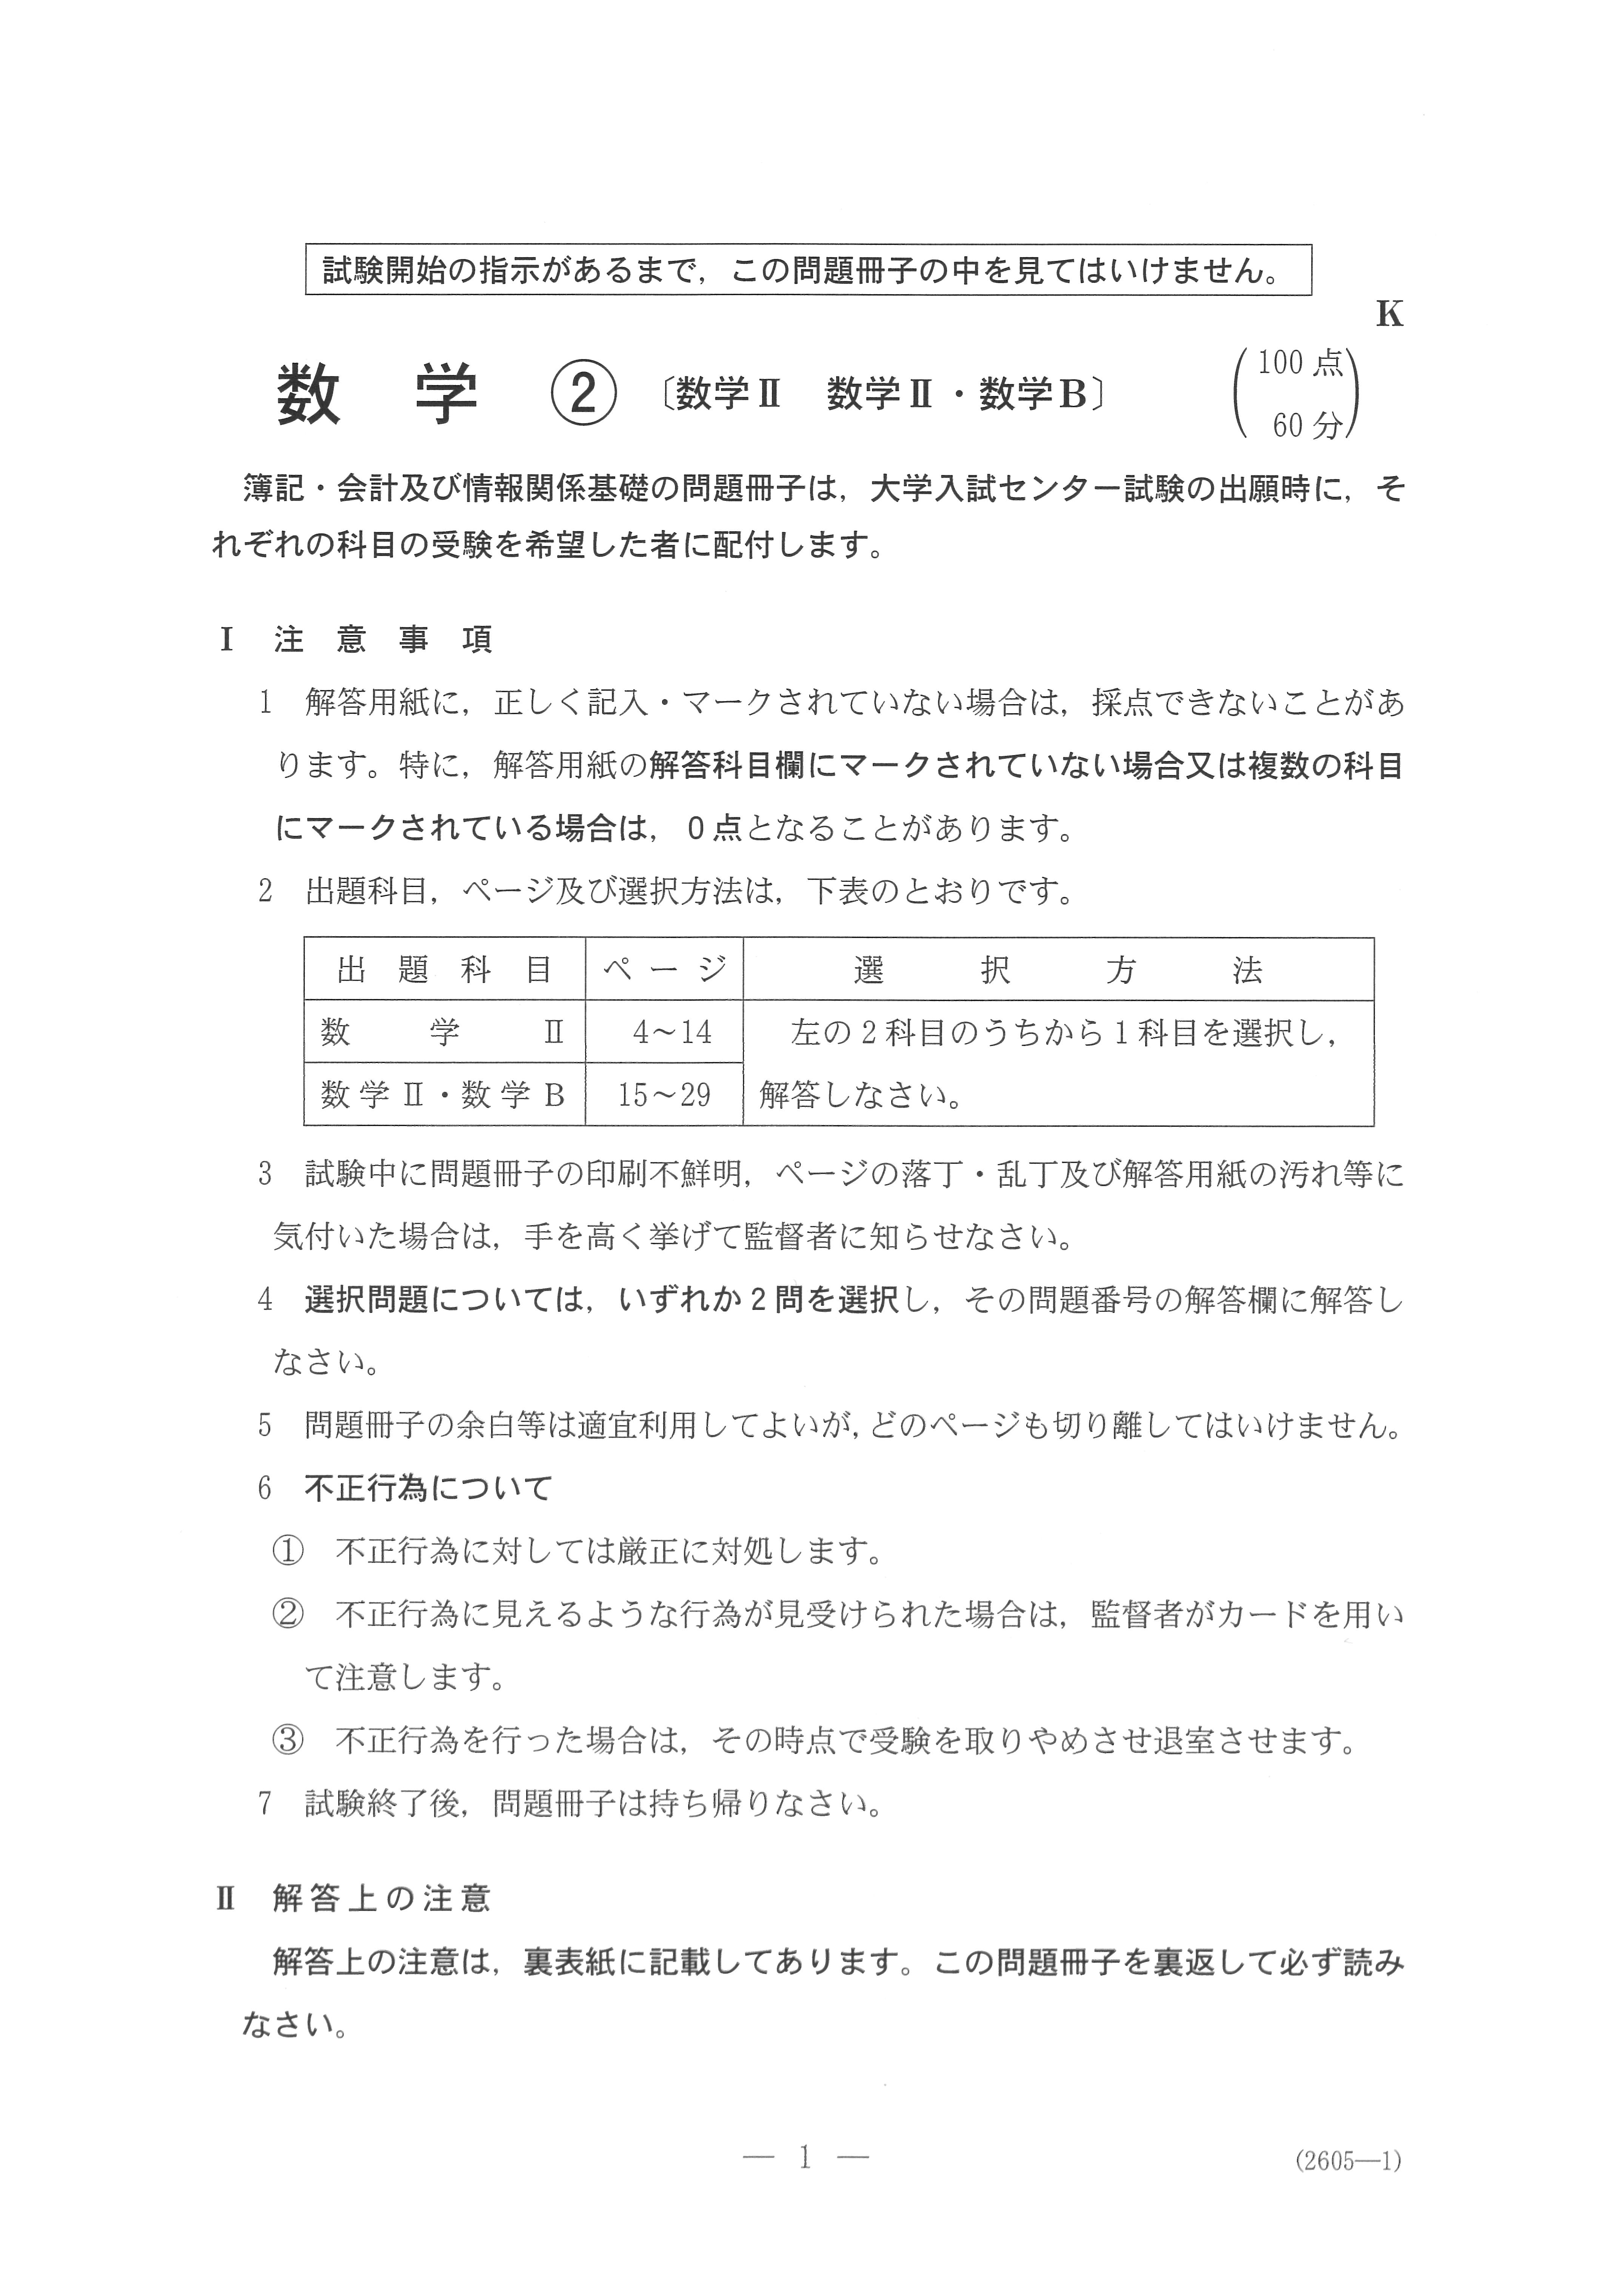 2019年 平成31年,令和元年 数学Ⅱ 大学入試センター試験過去問